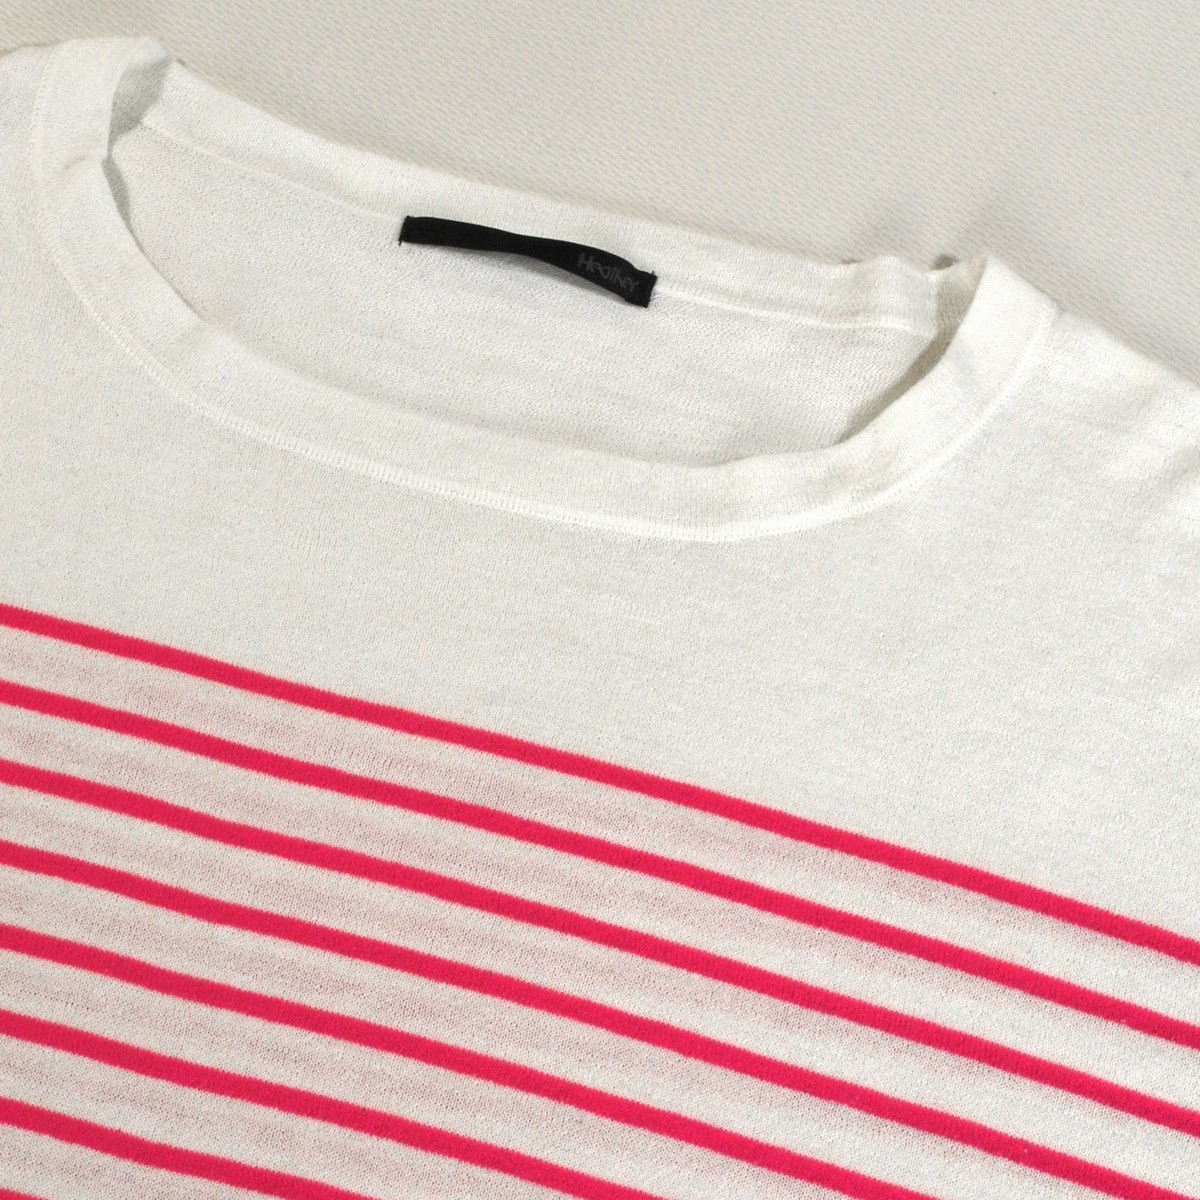 【美品】ナチュラルコーデ シンプル 7分袖 ピンク ボーダーカットソー Tシャツ